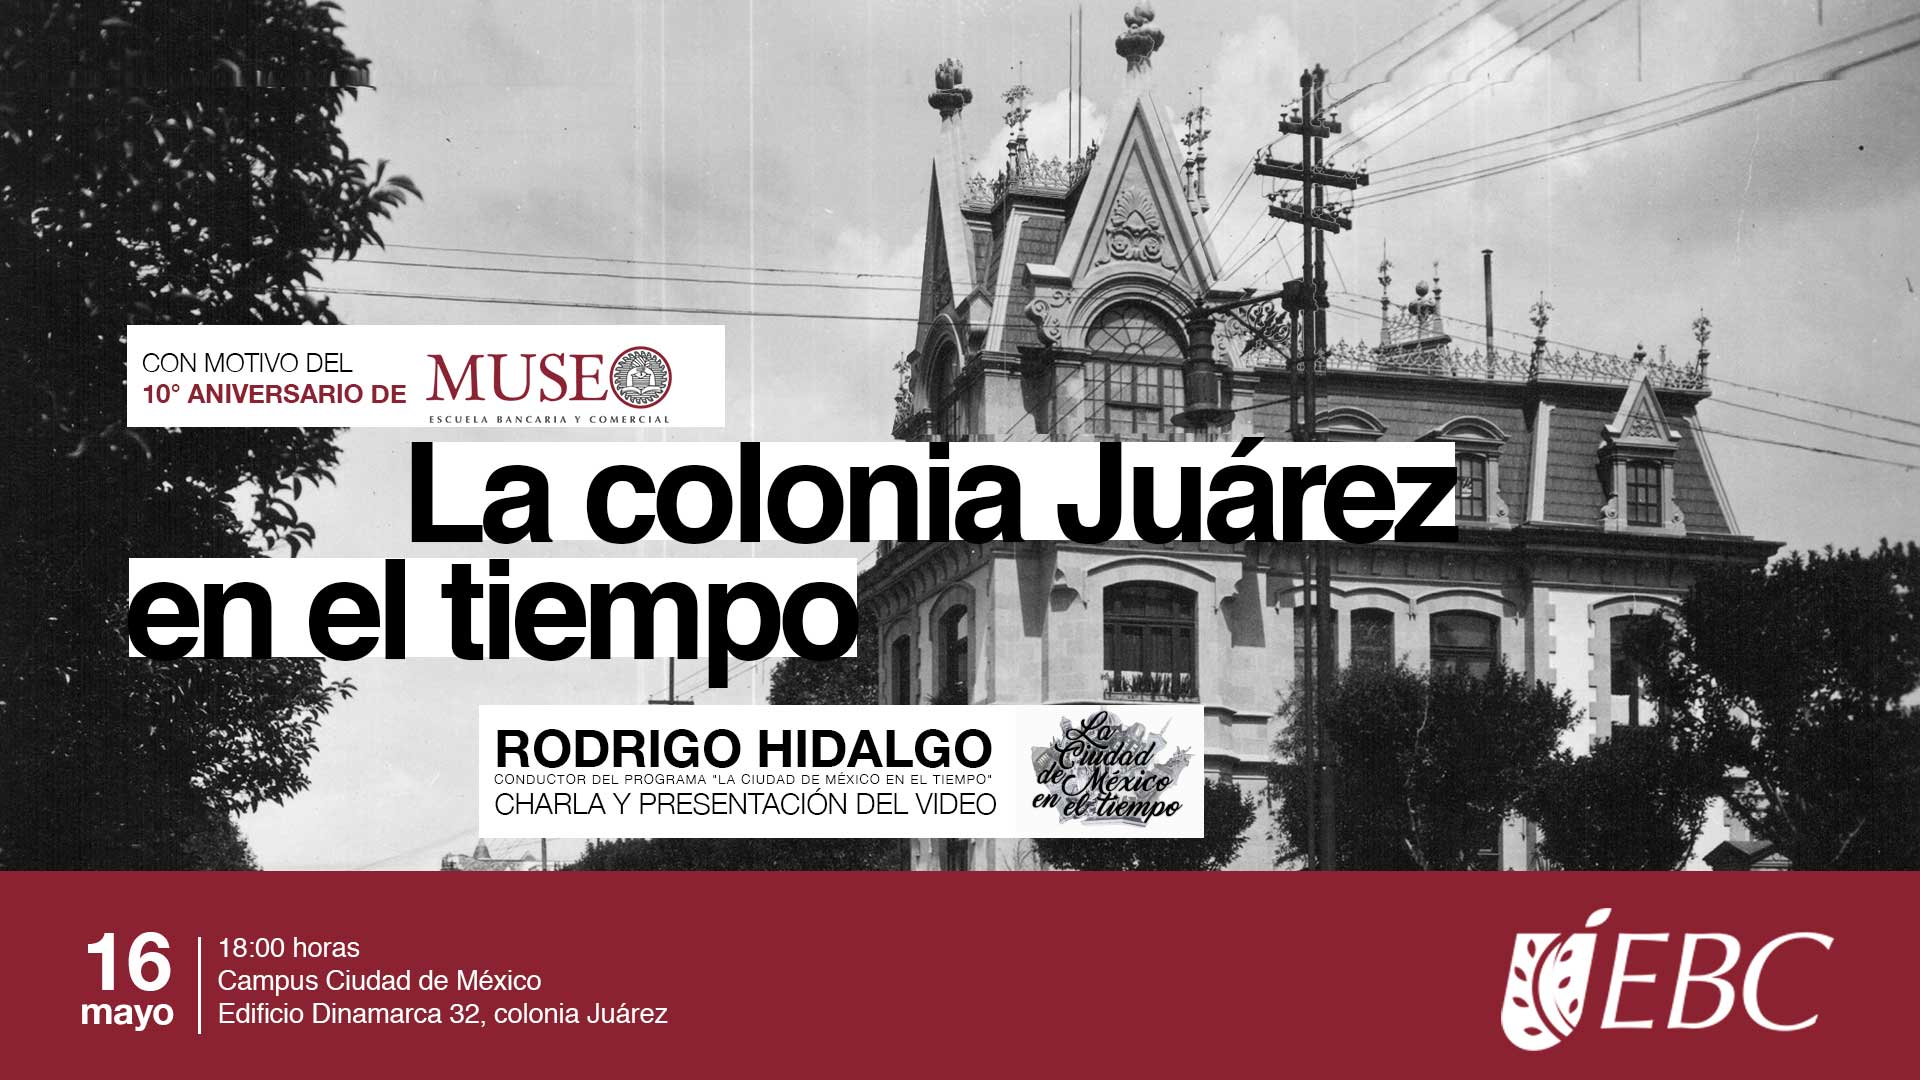 Conferencia y presentación del video de "La colonia Juárez en el tiempo"